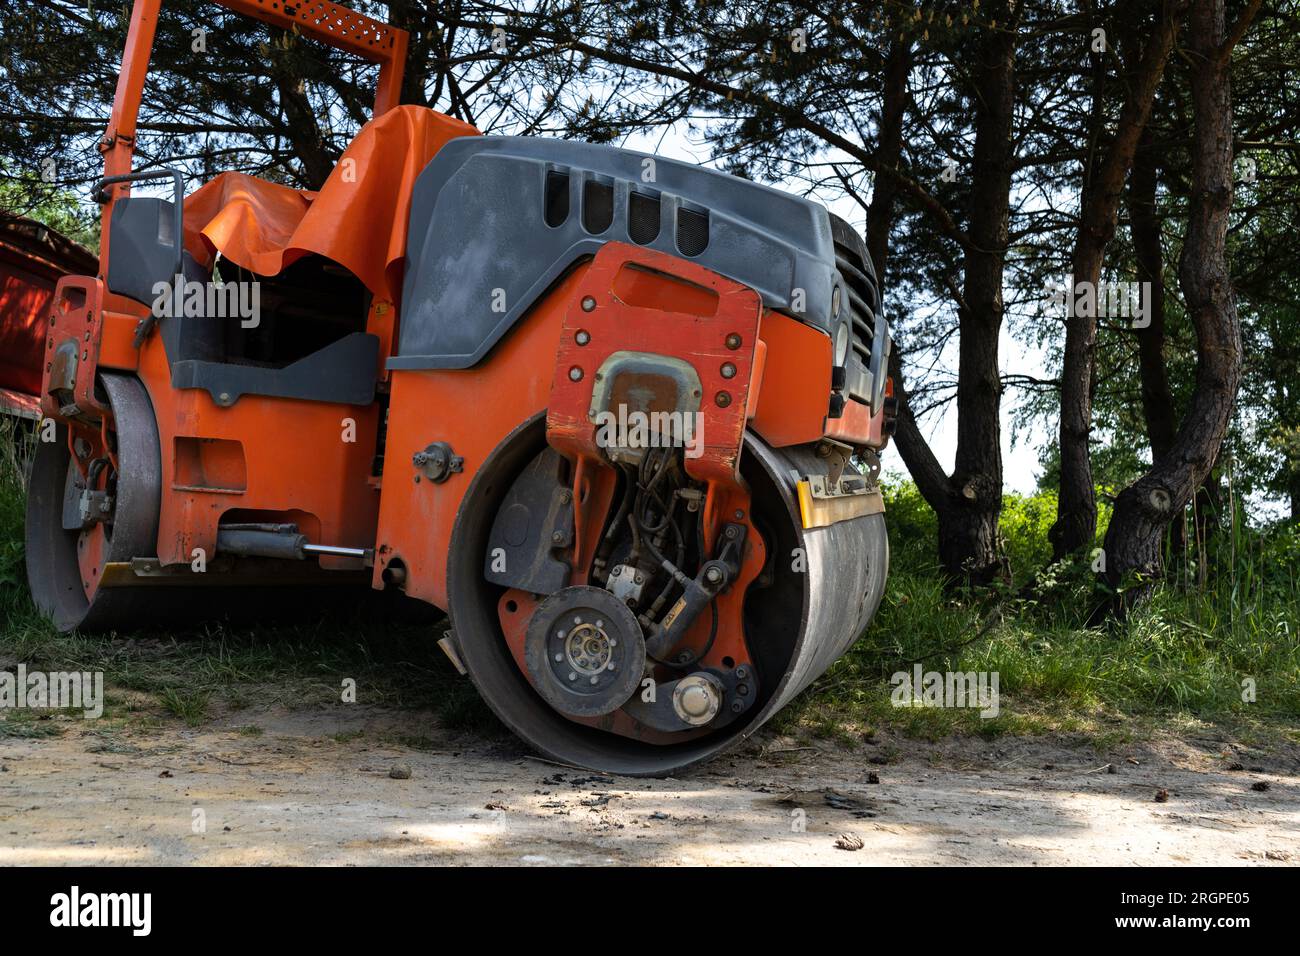 Machine à rouleaux tandem sur le chantier d'une nouvelle route. Compacteur de sol avec tambours à rouleaux pour compacter la couche d'asphalte. Banque D'Images